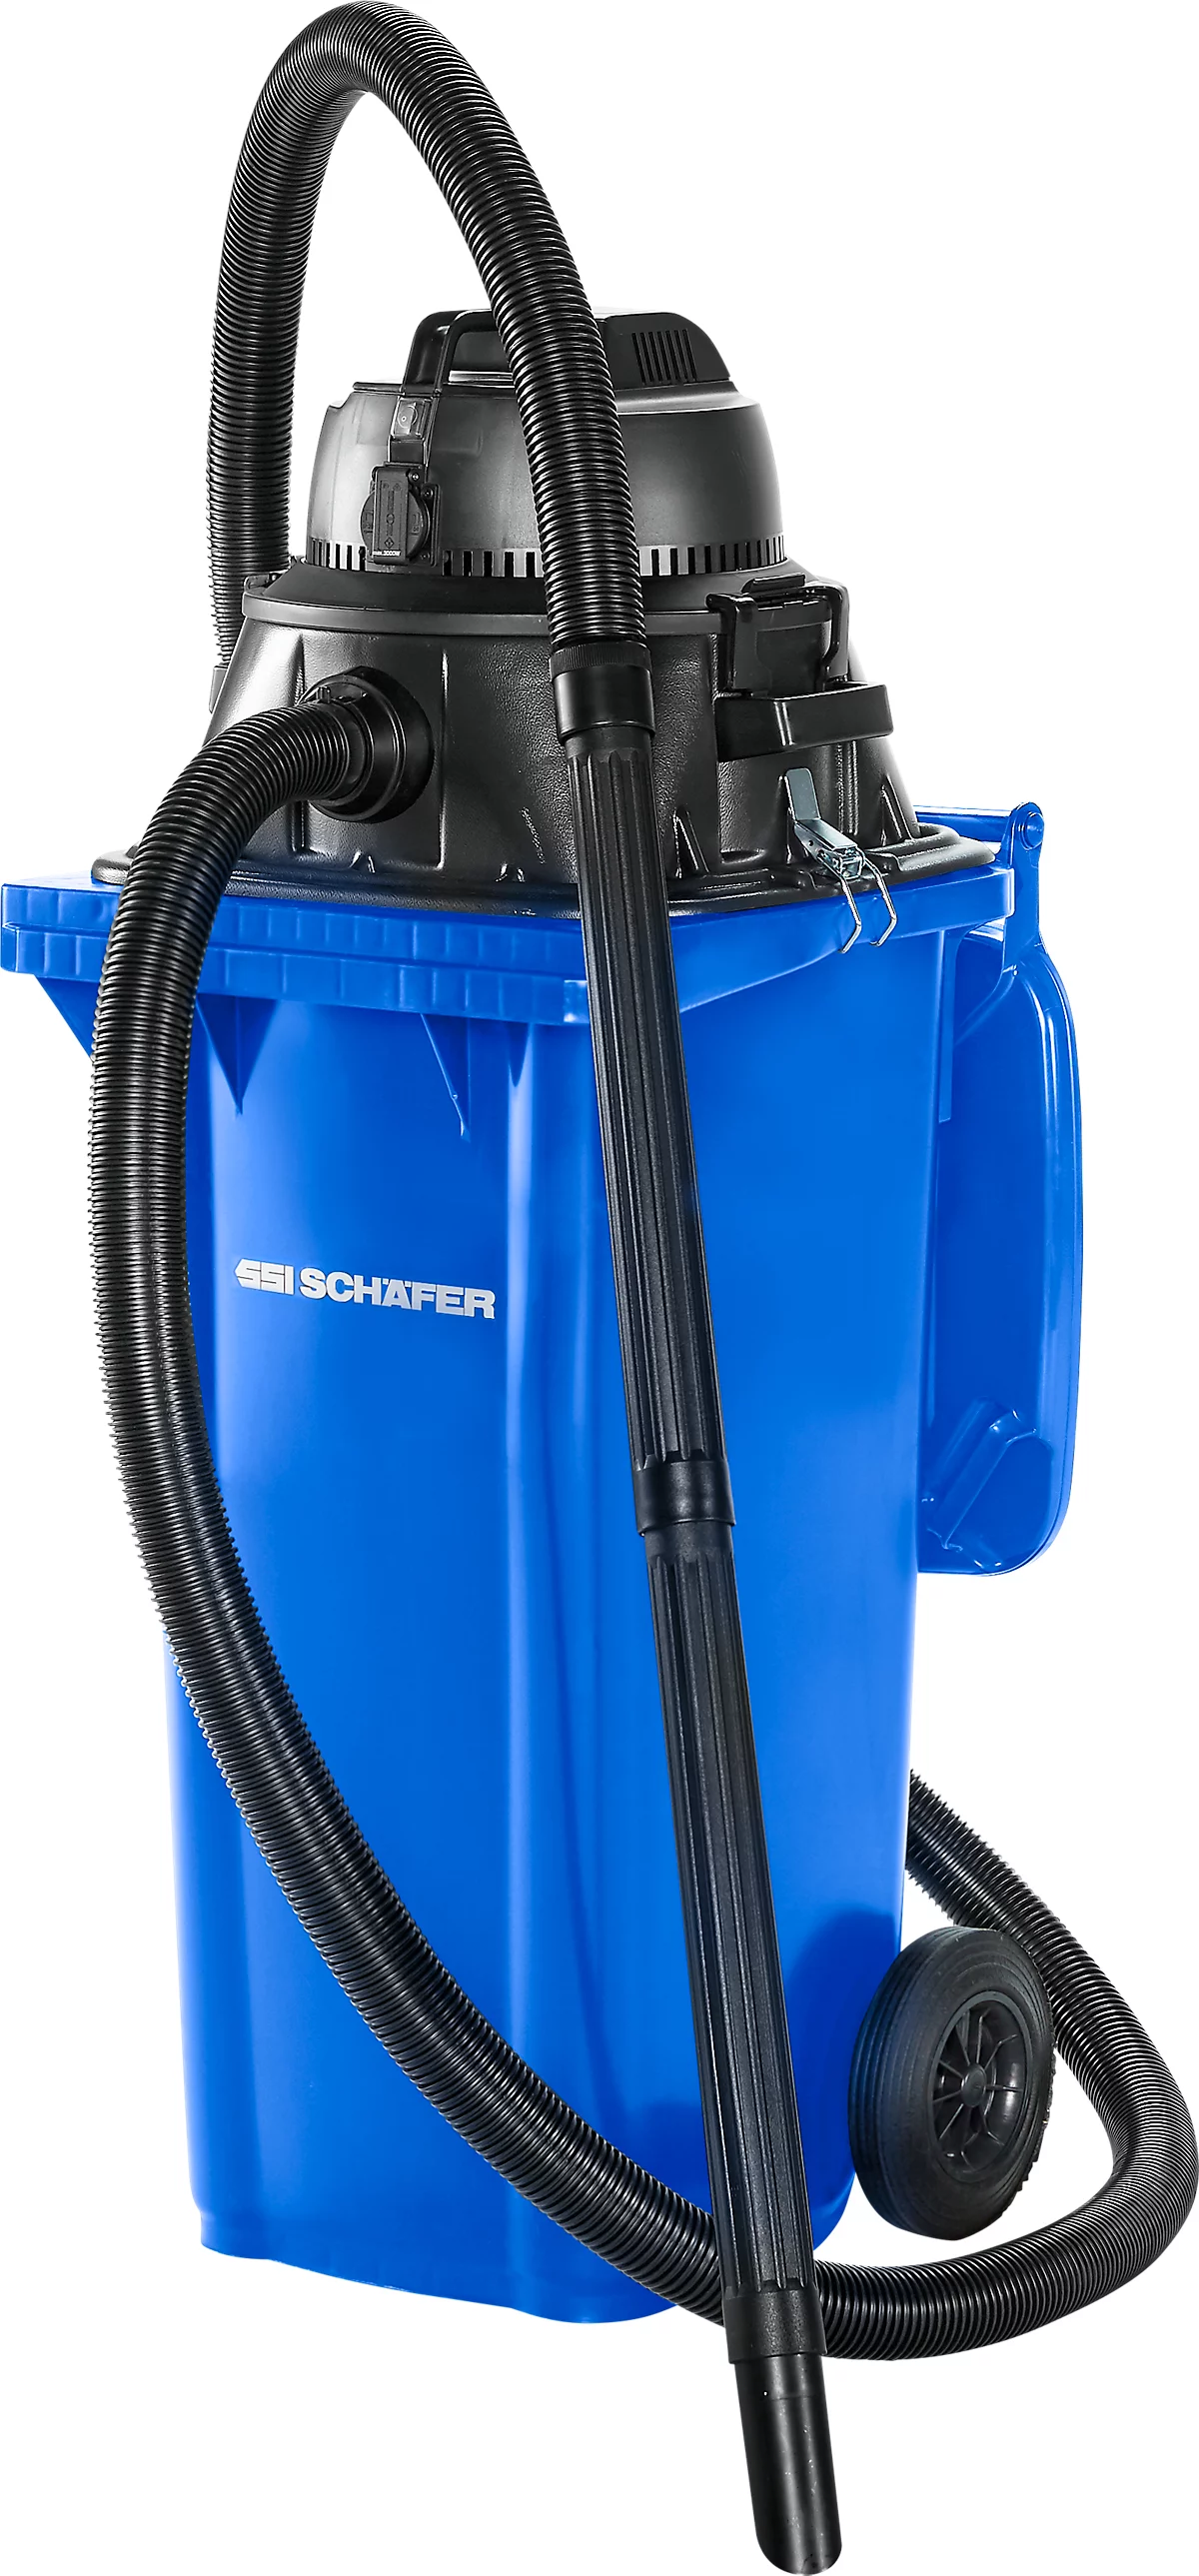 Juego completo de aspirador en seco y húmedo, con toma para herramientas, incl. cubo de basura grande para 120 l, 1 filtro de cartucho y 1 filtro de vellón, azul